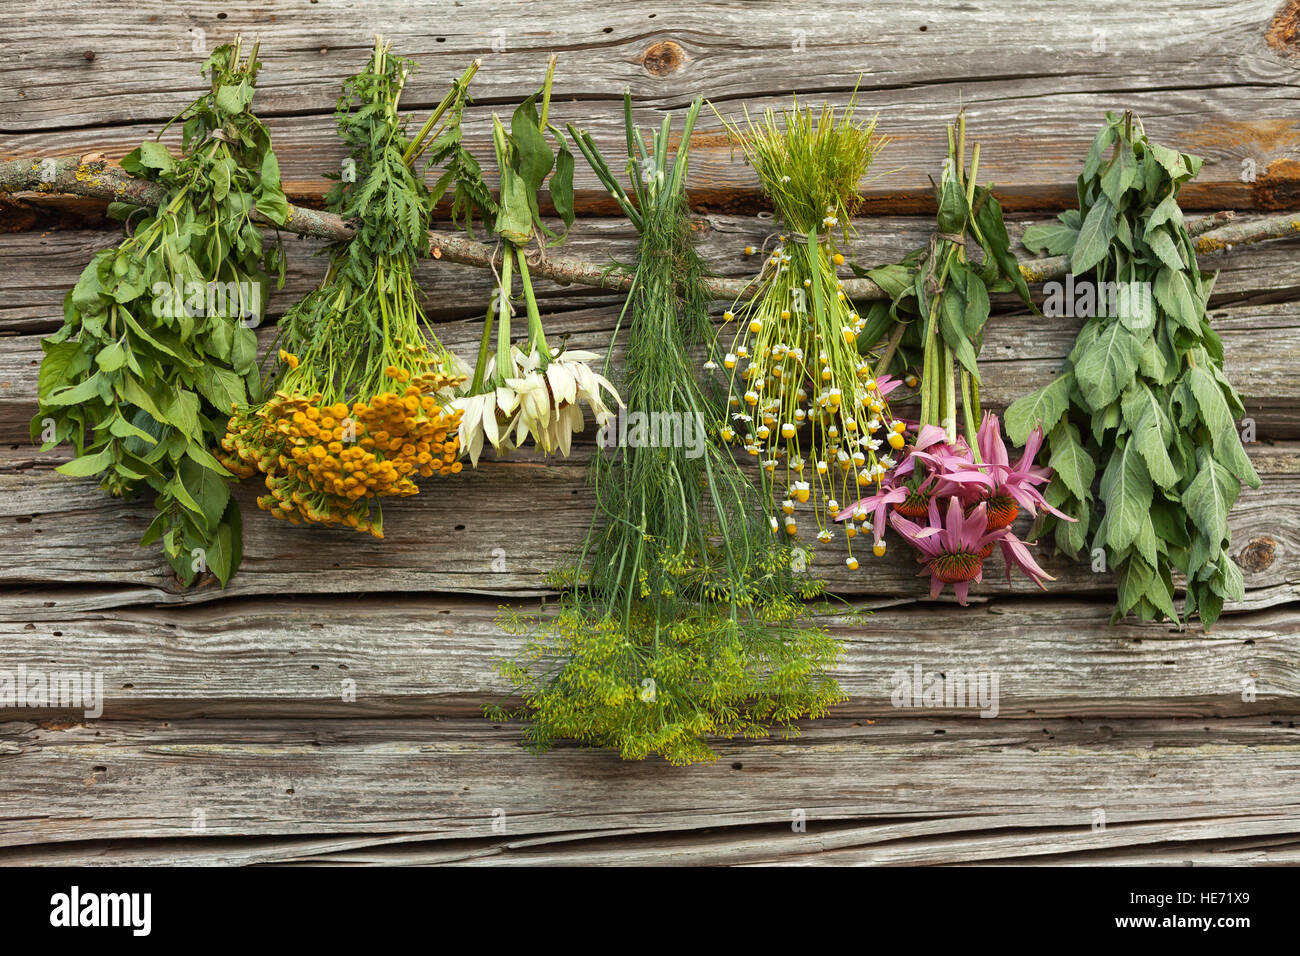 Les herbes médicales séchage dans l'ombre : l'échinacée,camomille,aneth,tanaisie,melissa. Banque D'Images